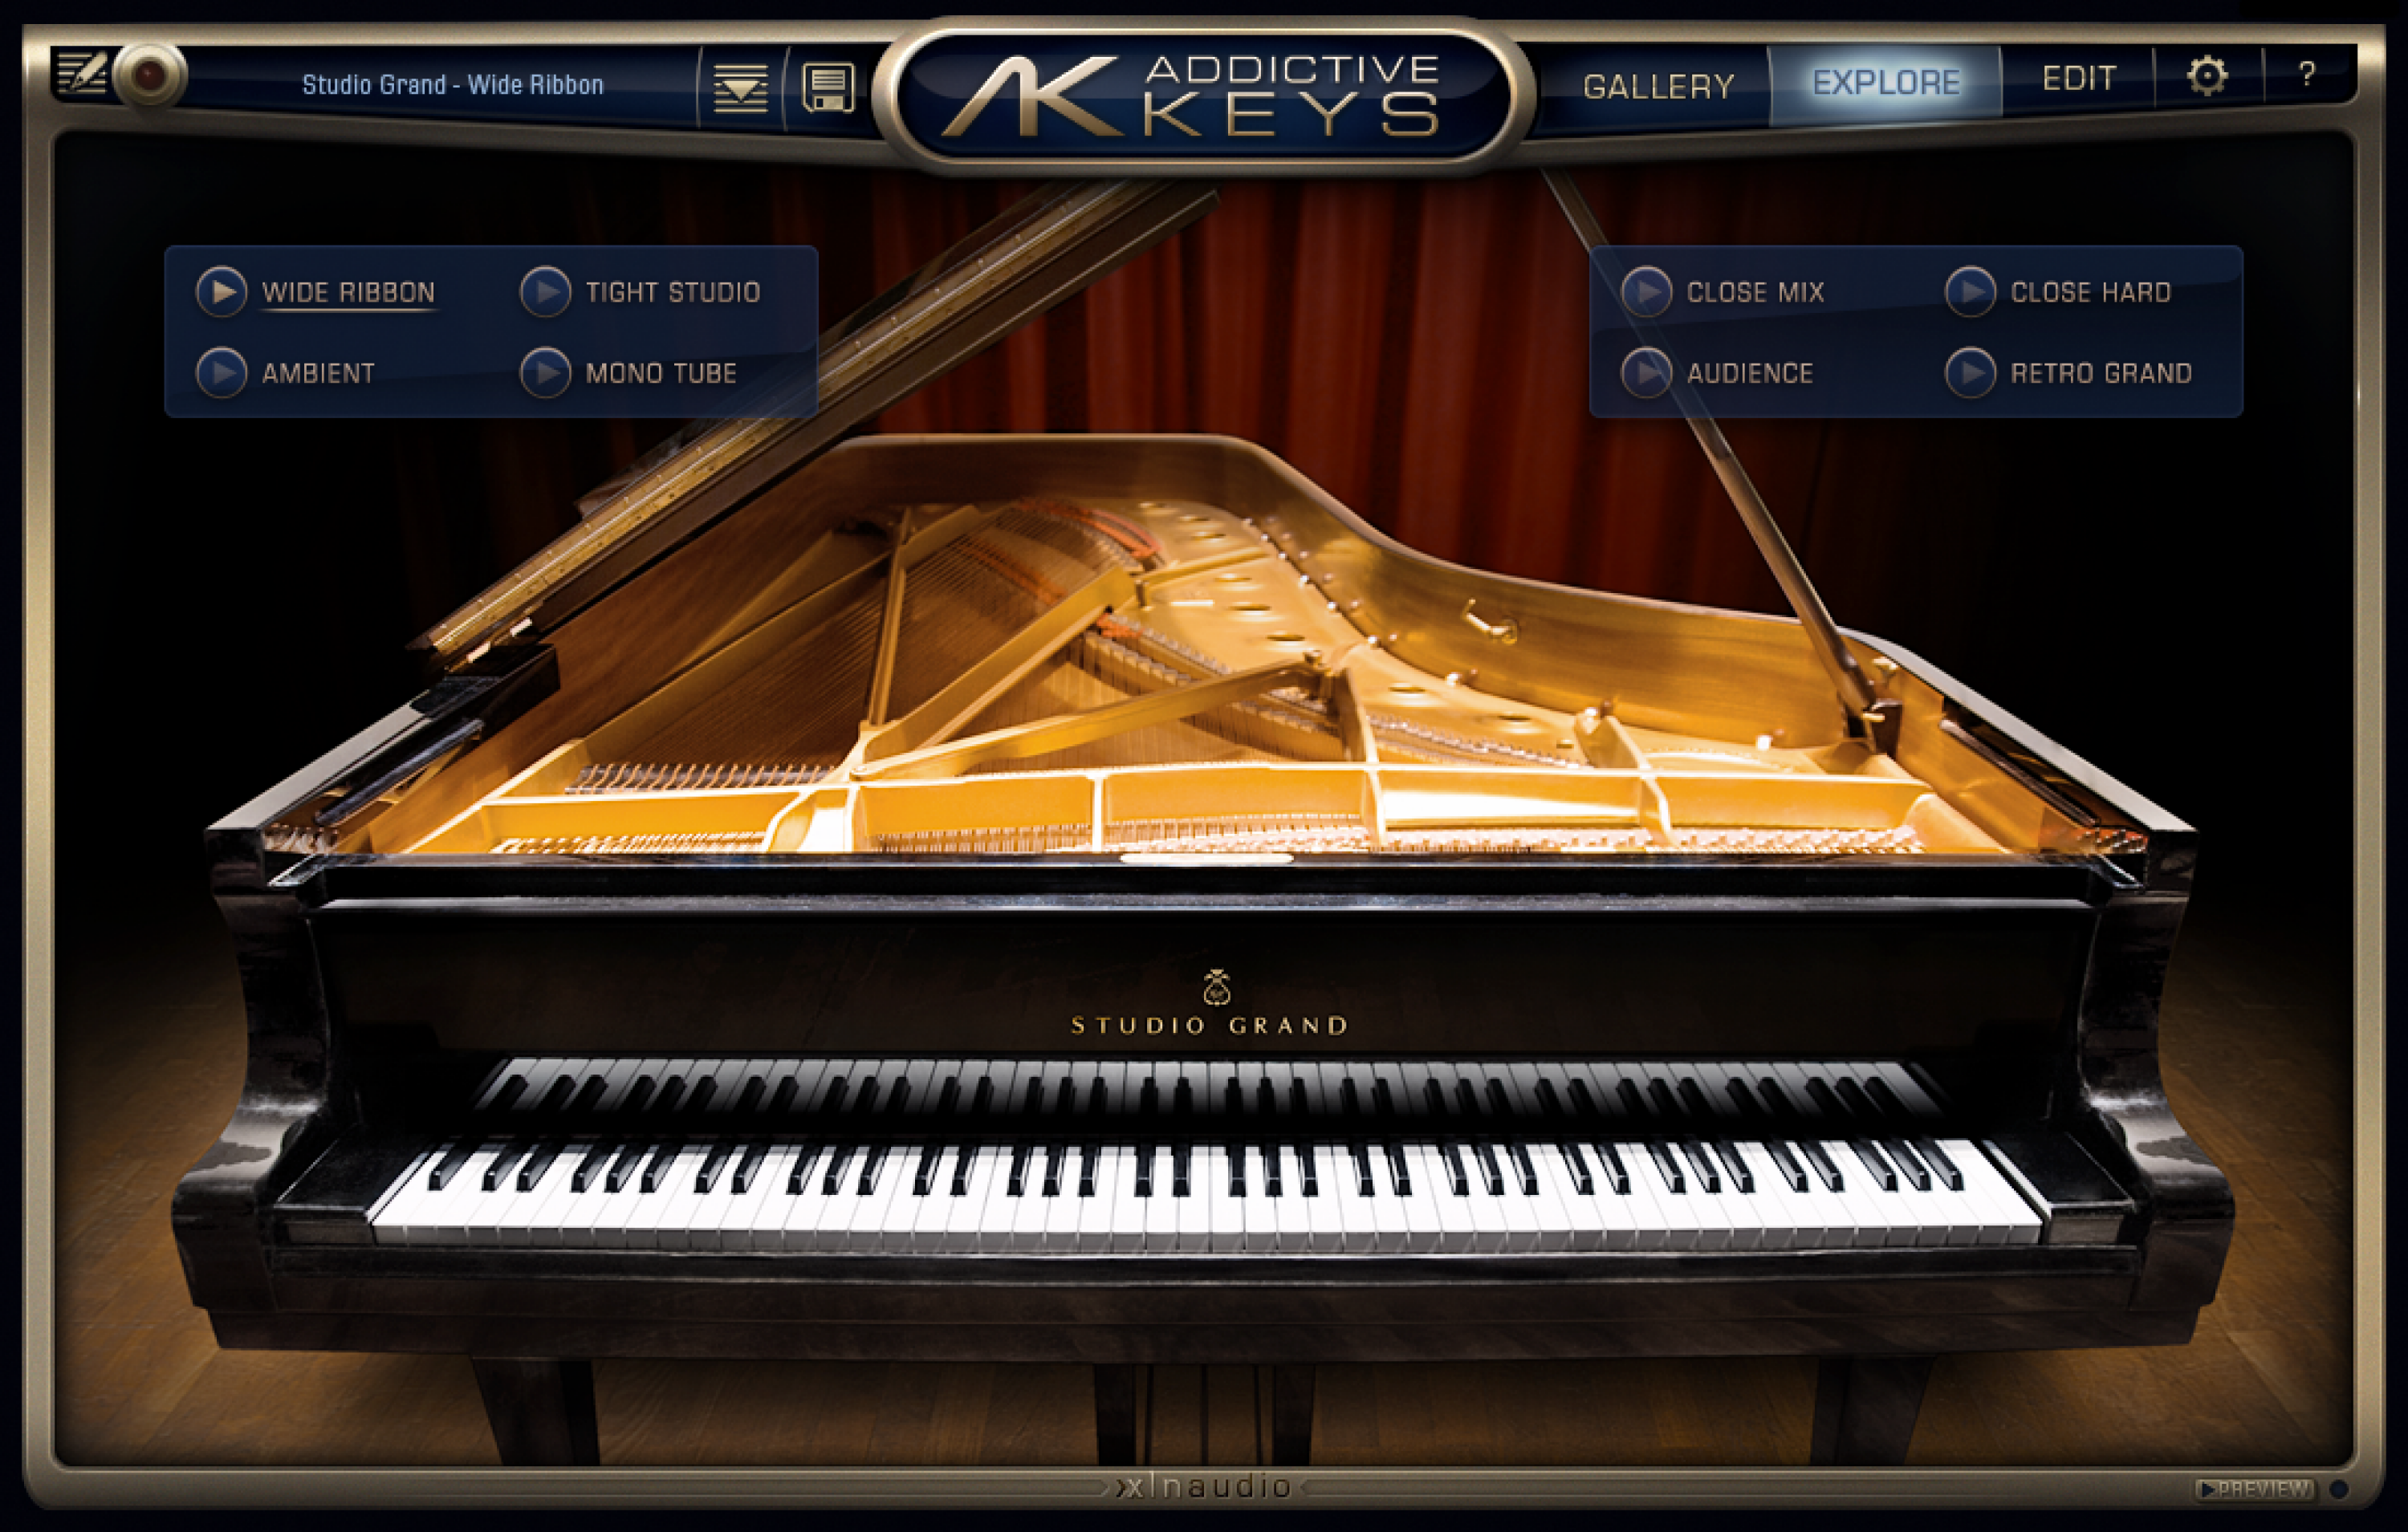 正規品 ピアノ音源 Addictive Keys Studio Grand VST/AU/AAXプラグイン DTM DTMer 歌い手 ボカロP Type beat